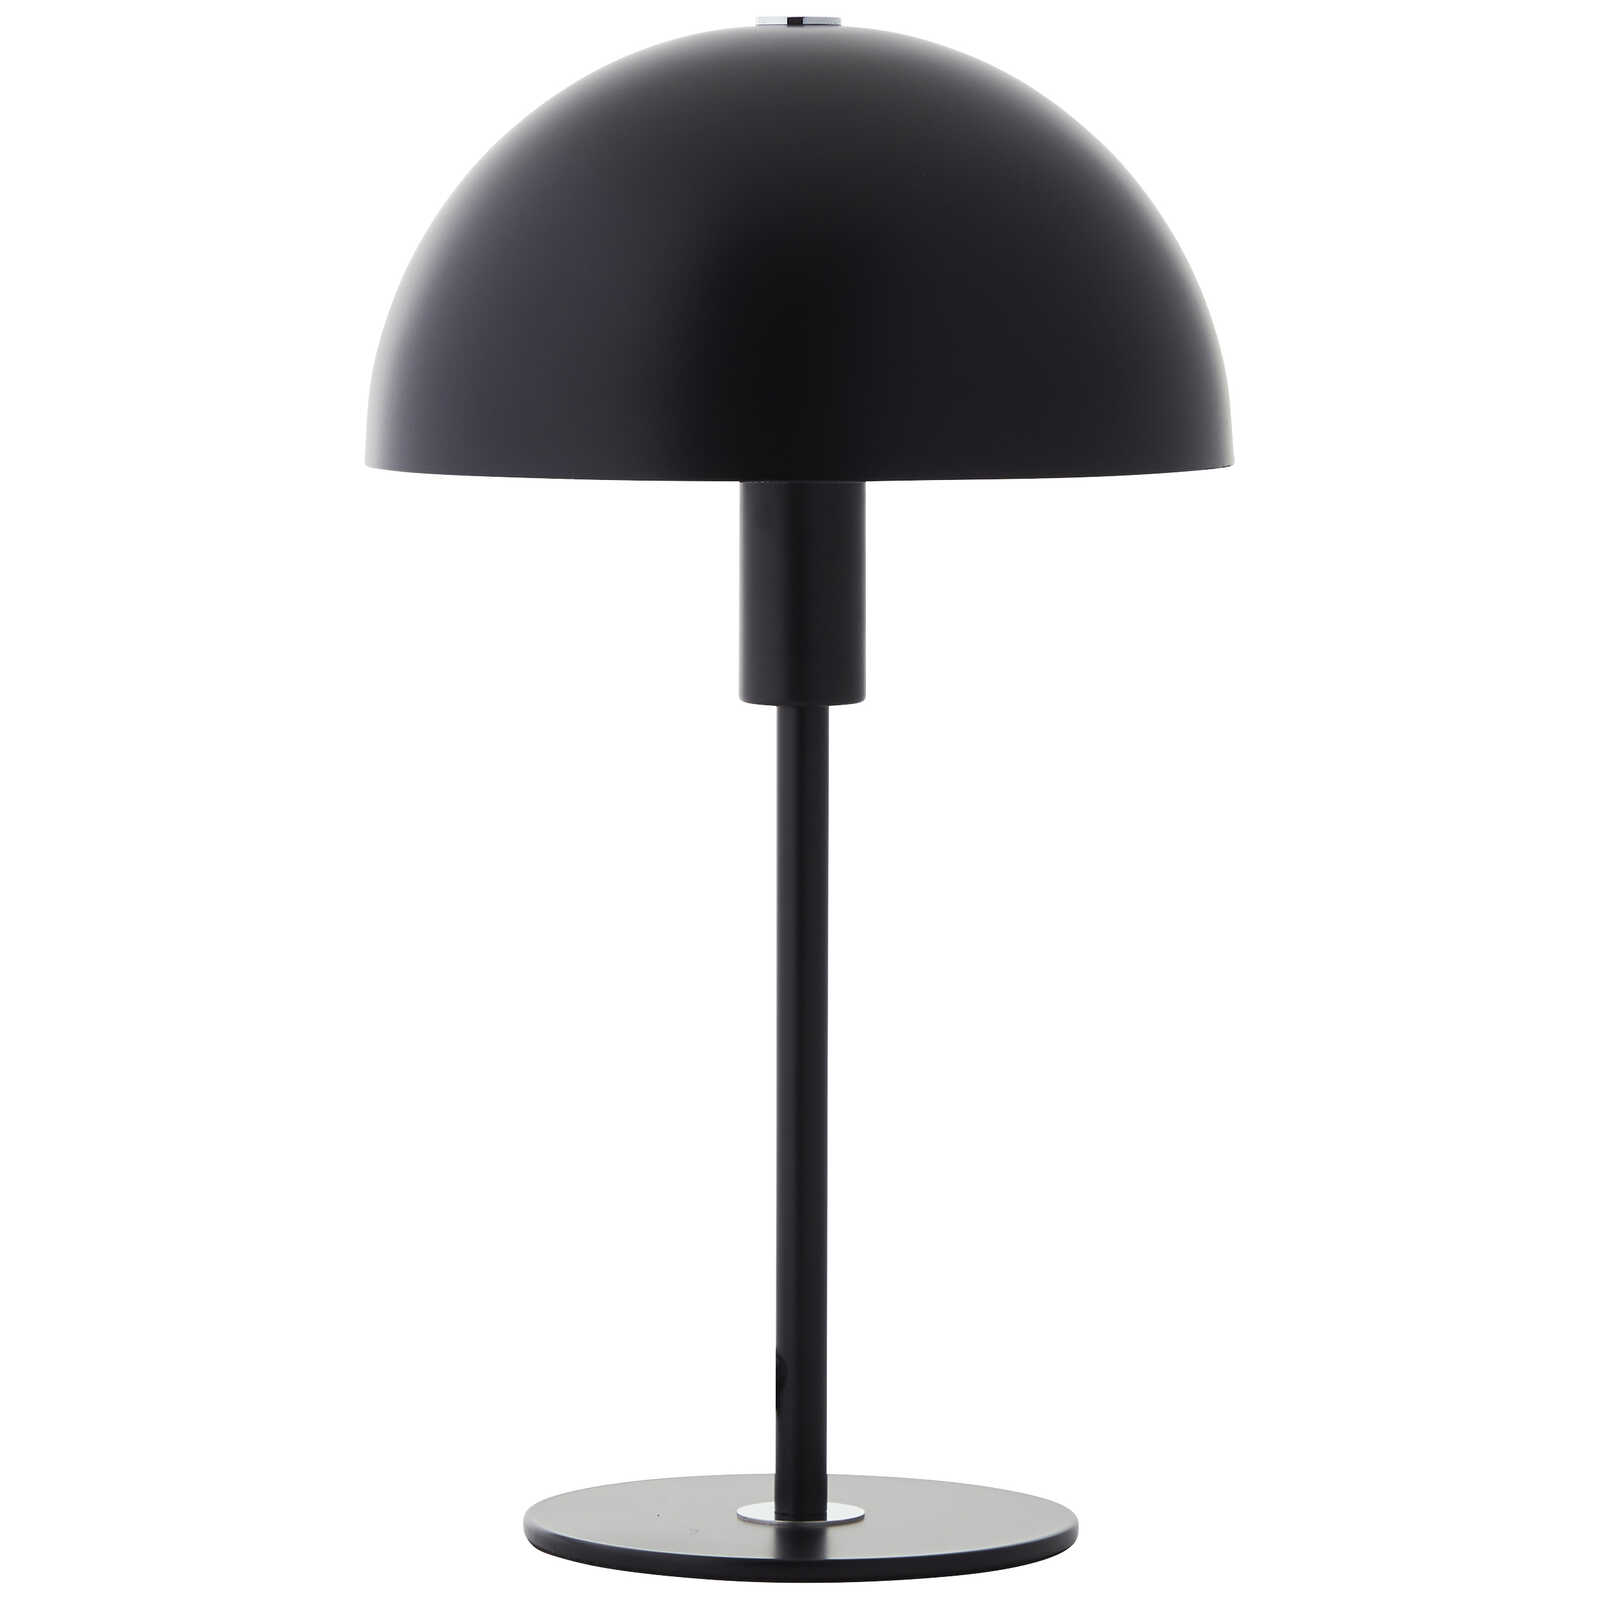             Metalen tafellamp - Lasse 4 - Zwart
        